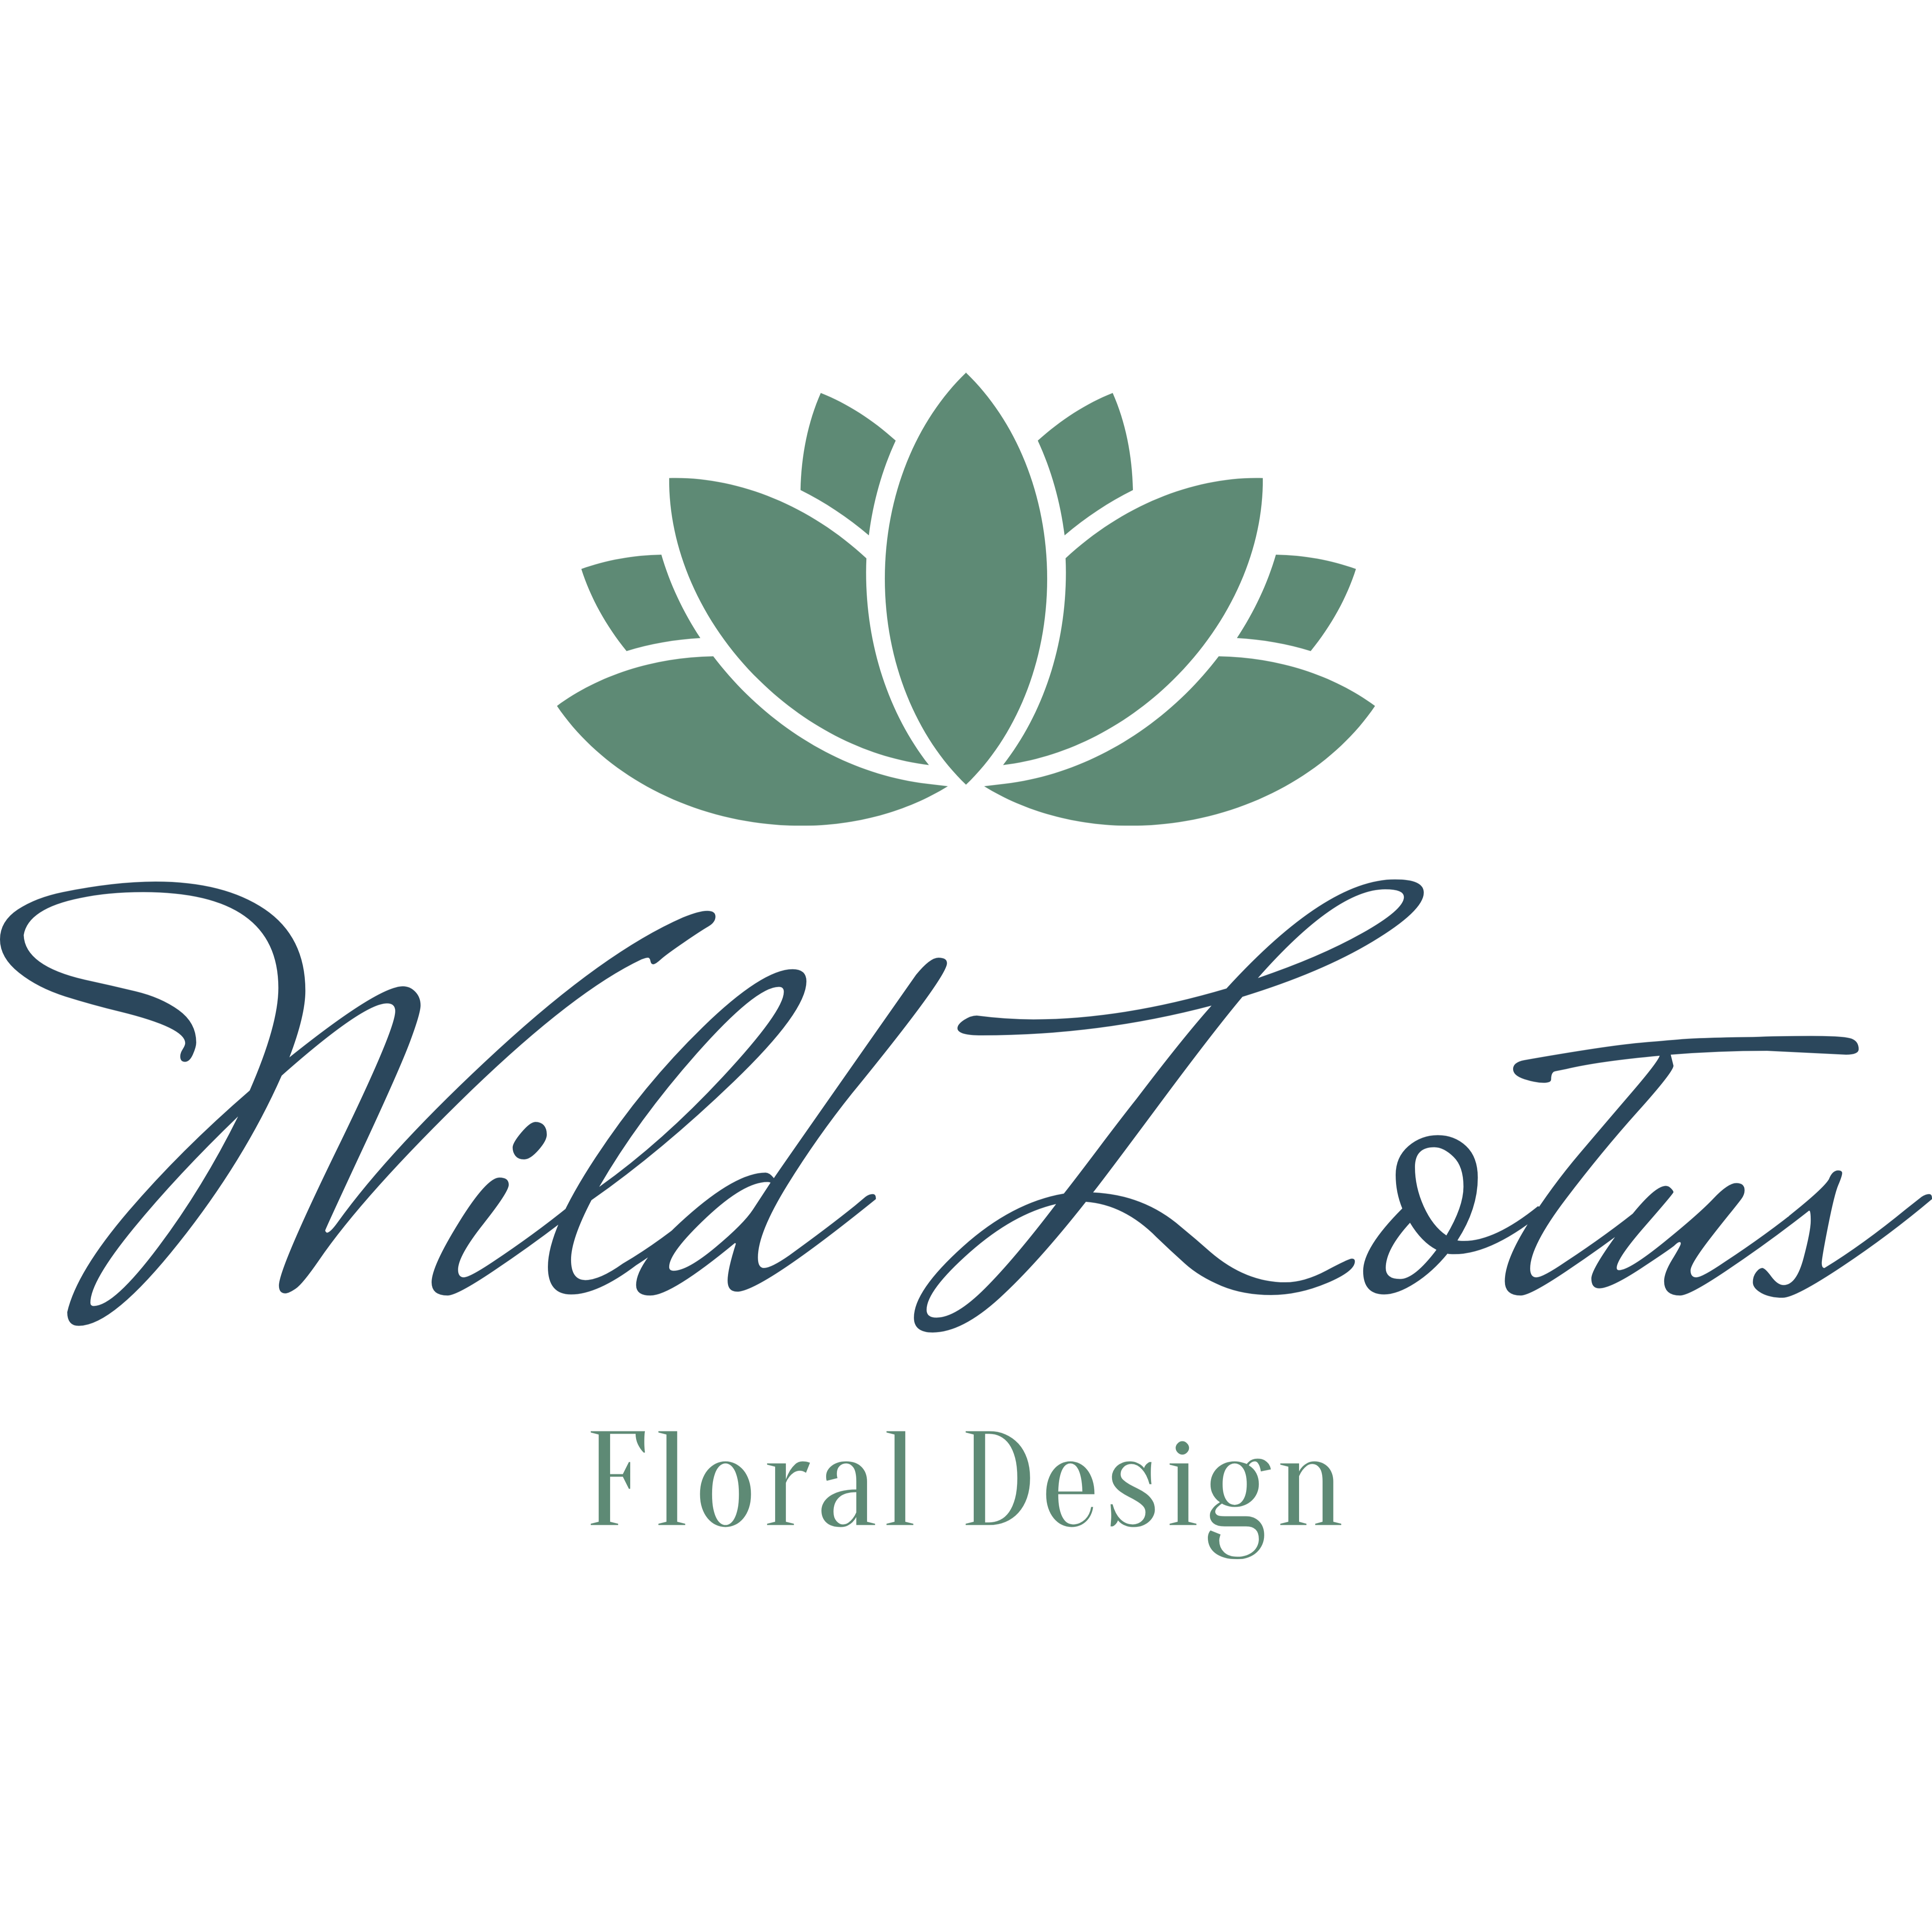 Wild Lotus Floral Design